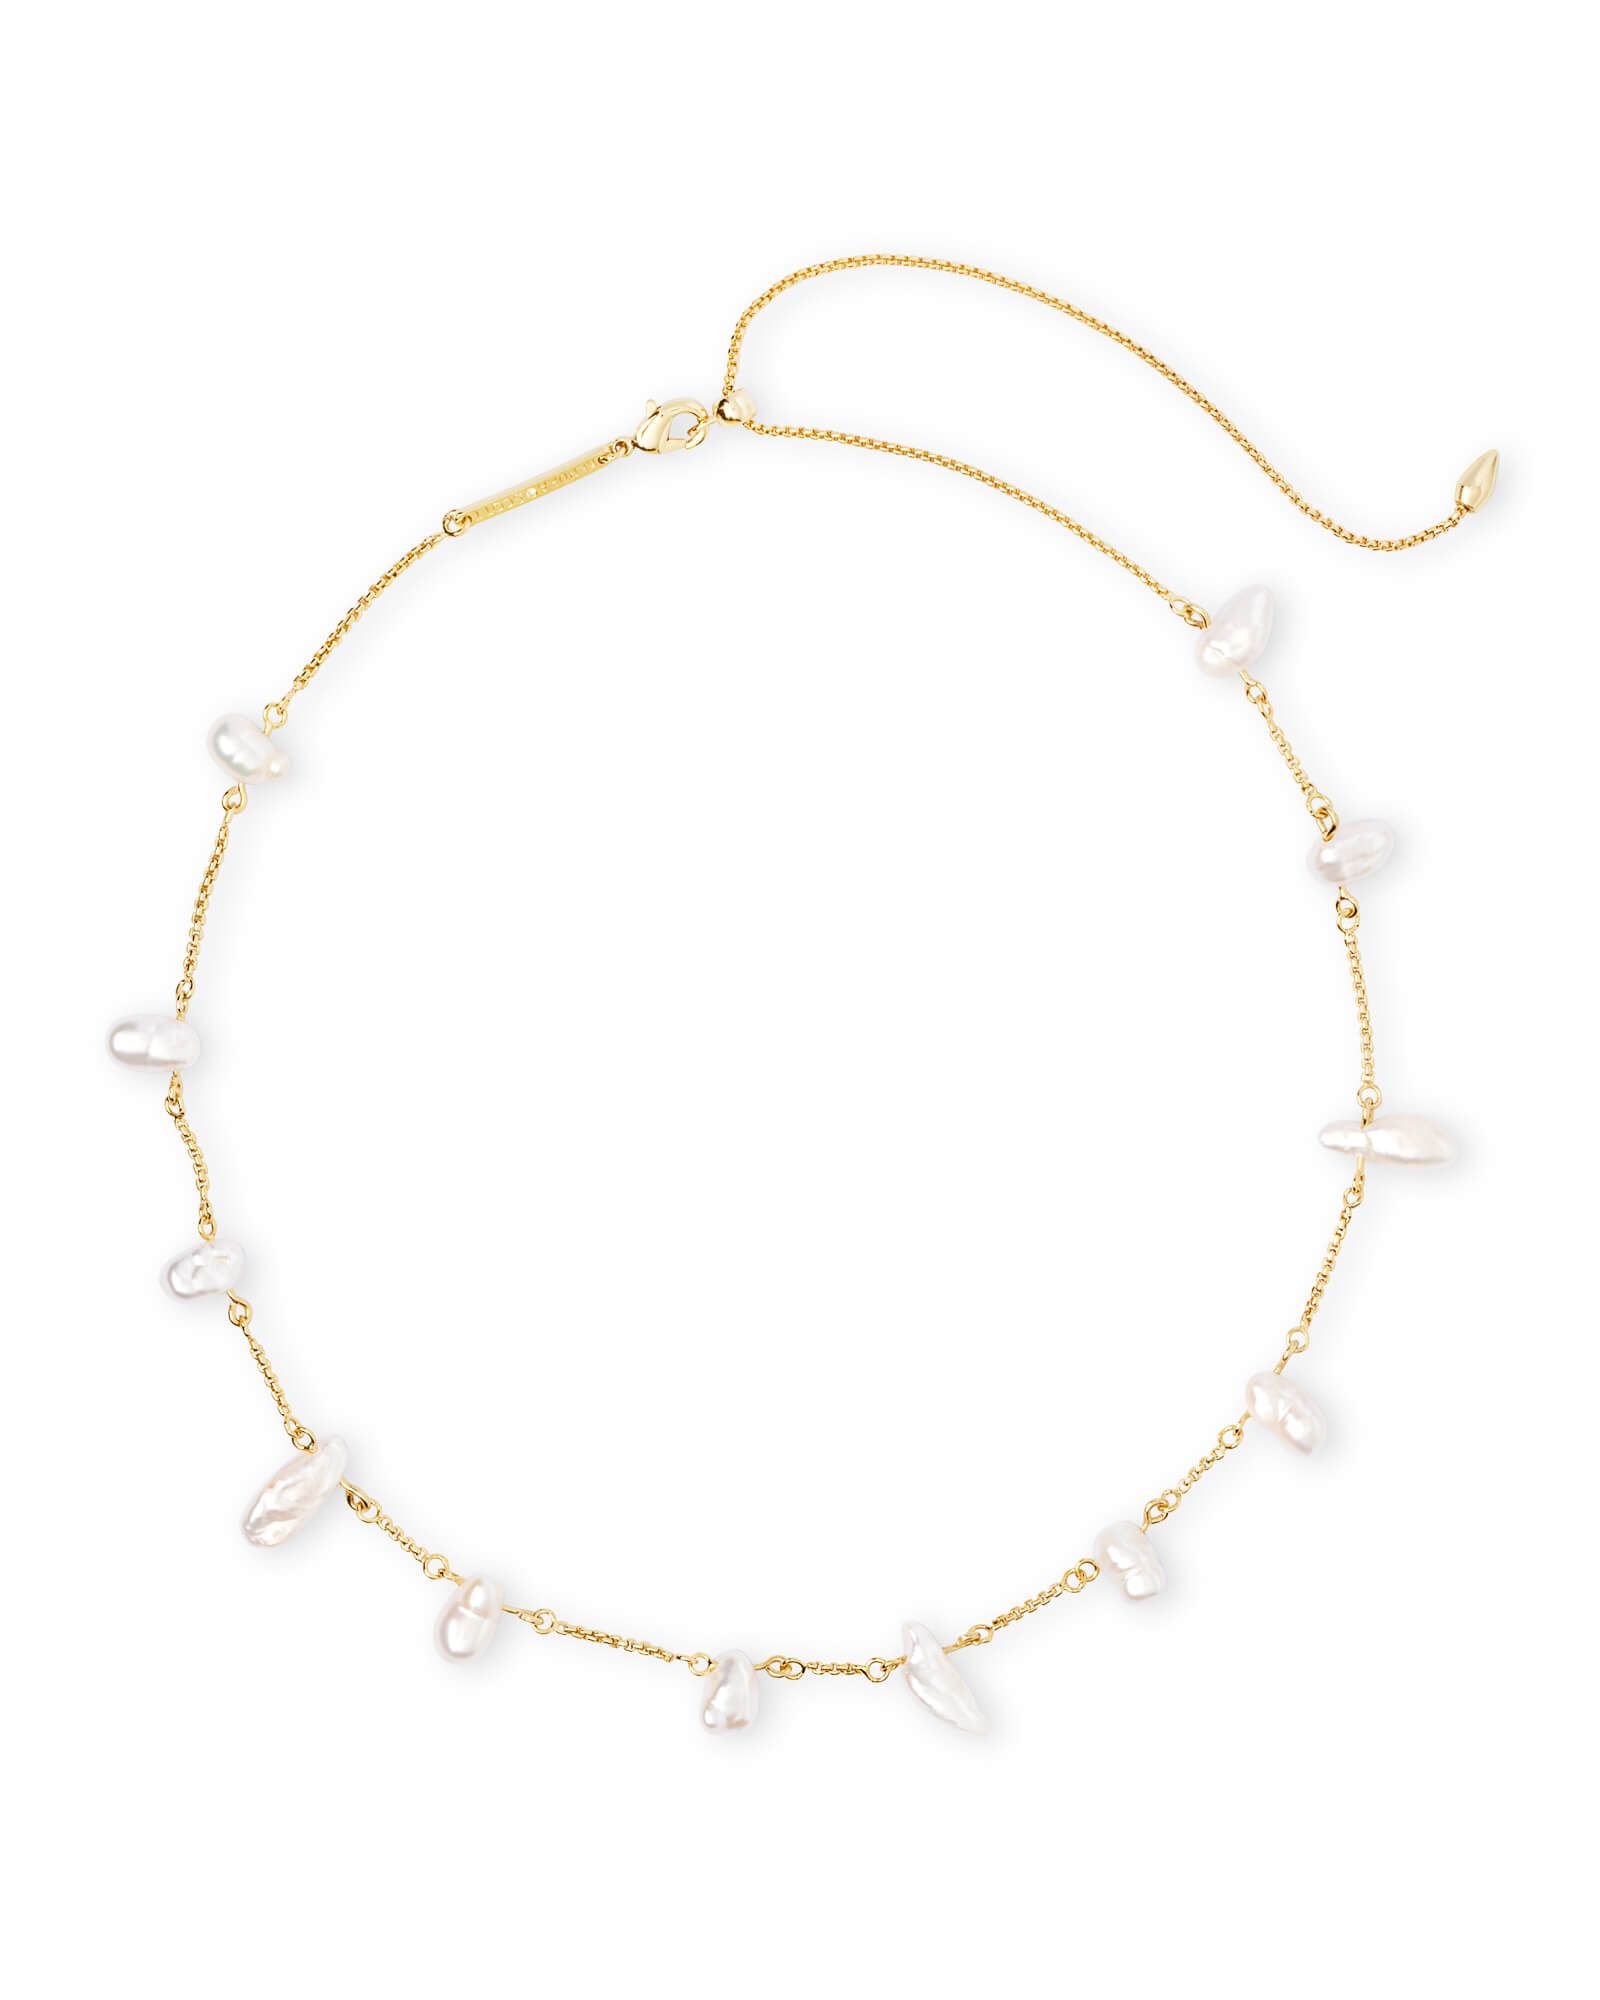 Krissa Gold Choker Necklace in Pearl | Kendra Scott | Kendra Scott